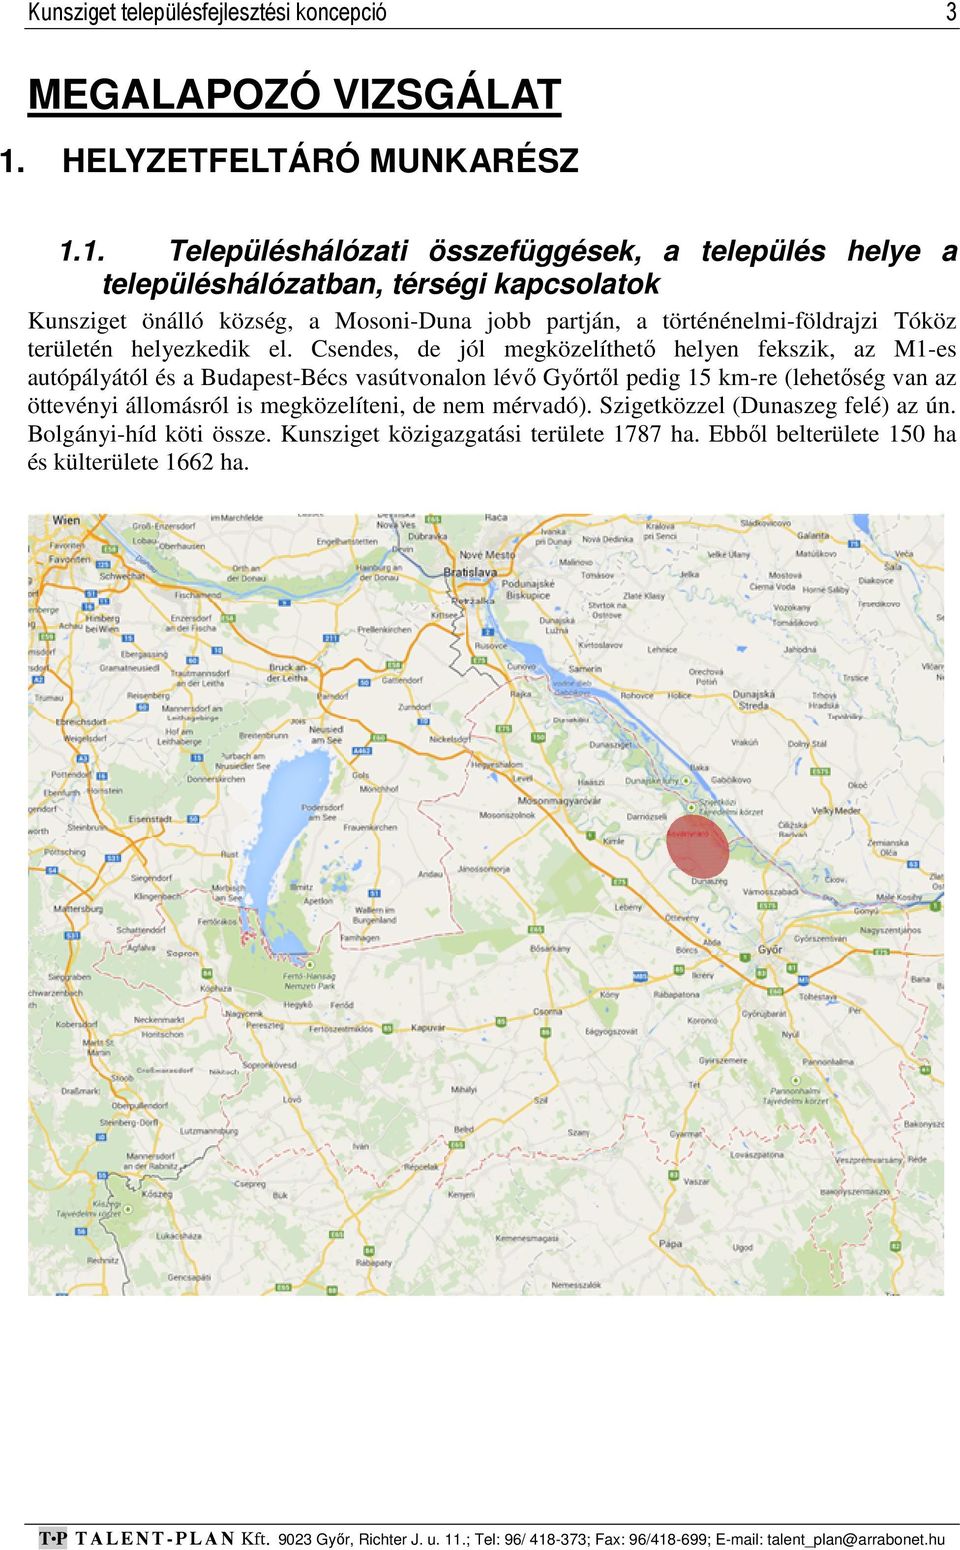 1. Településhálózati összefüggések, a település helye a településhálózatban, térségi kapcsolatok Kunsziget önálló község, a Mosoni-Duna jobb partján, a